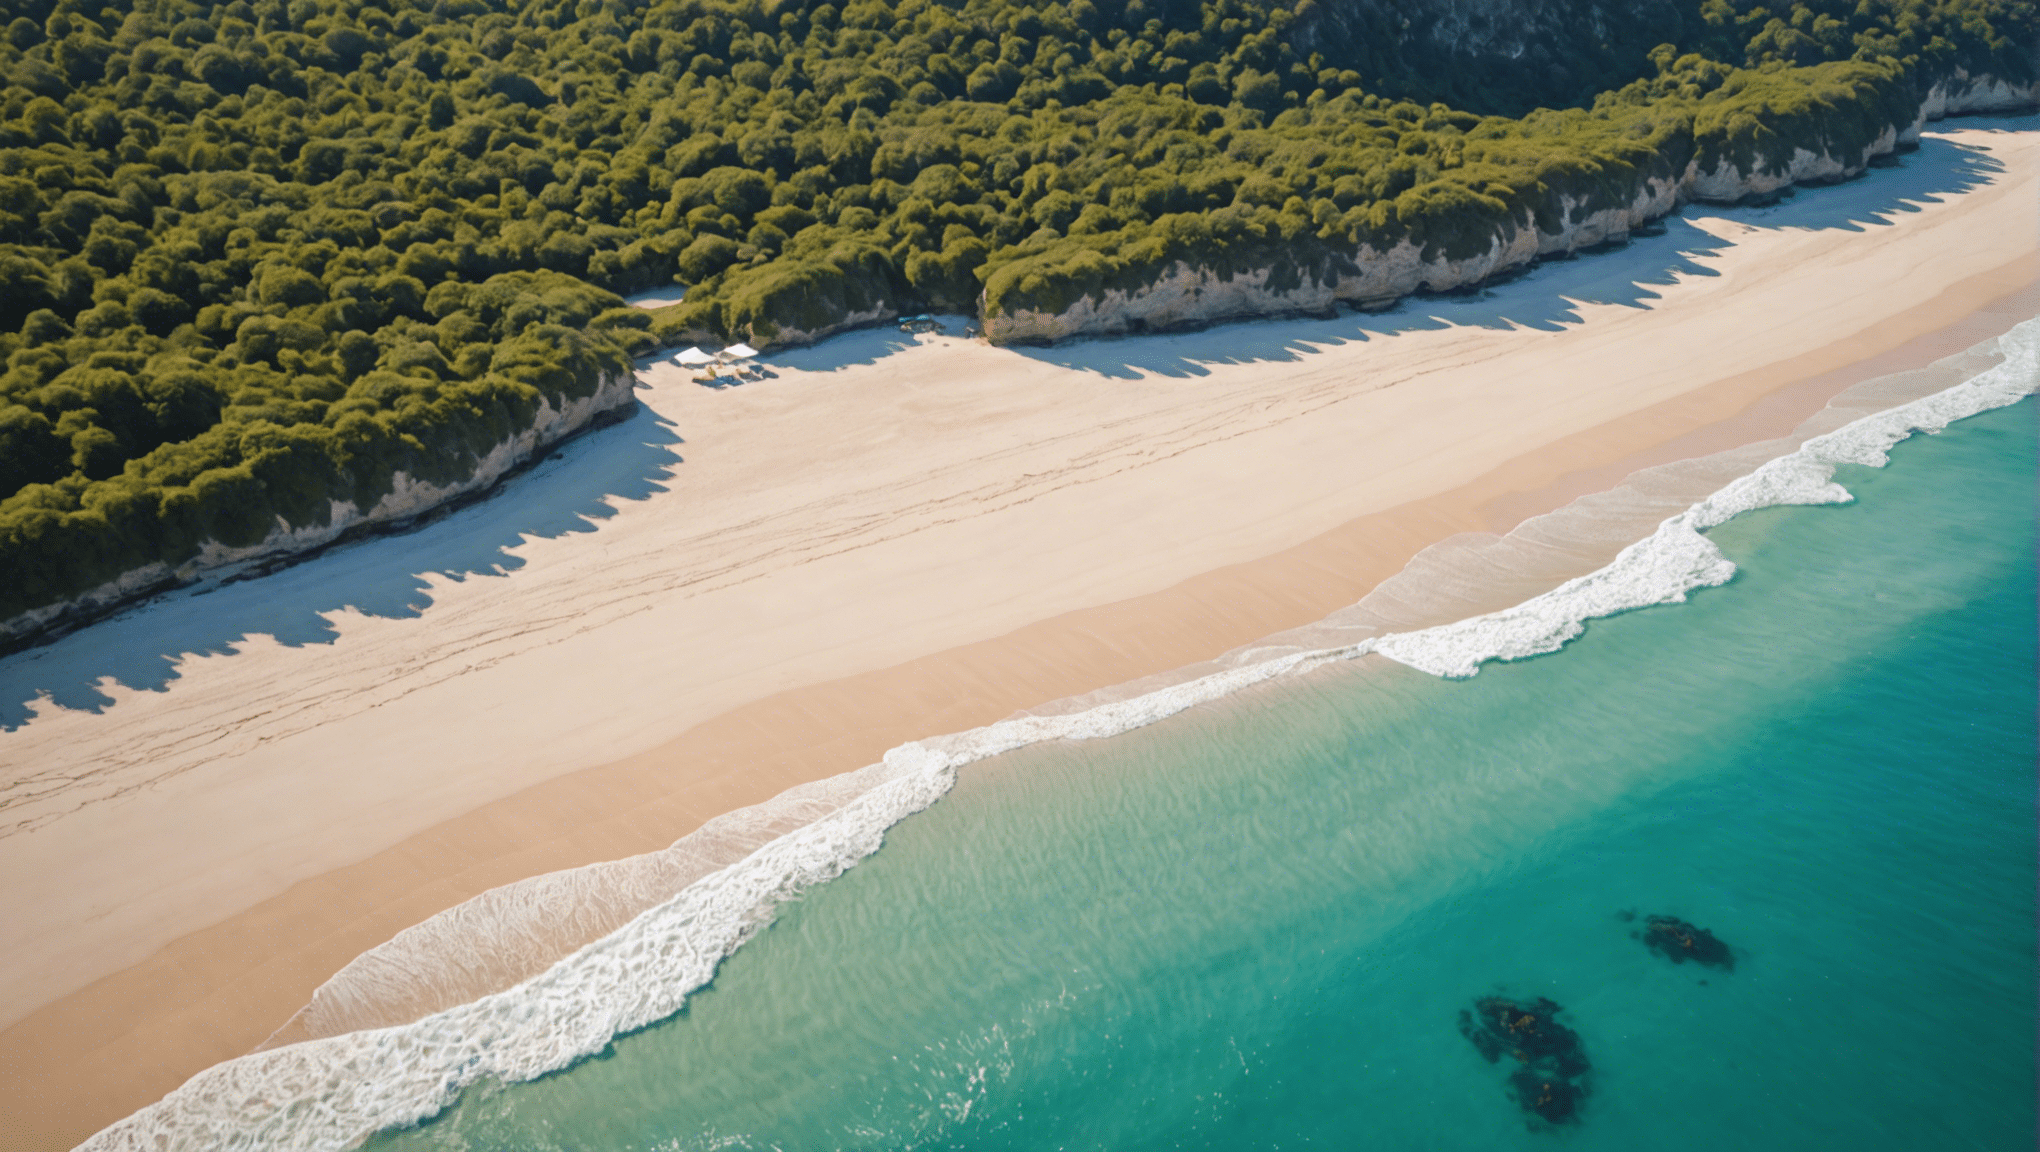 descubra as mais magníficas praias secretas para um verão inesquecível.